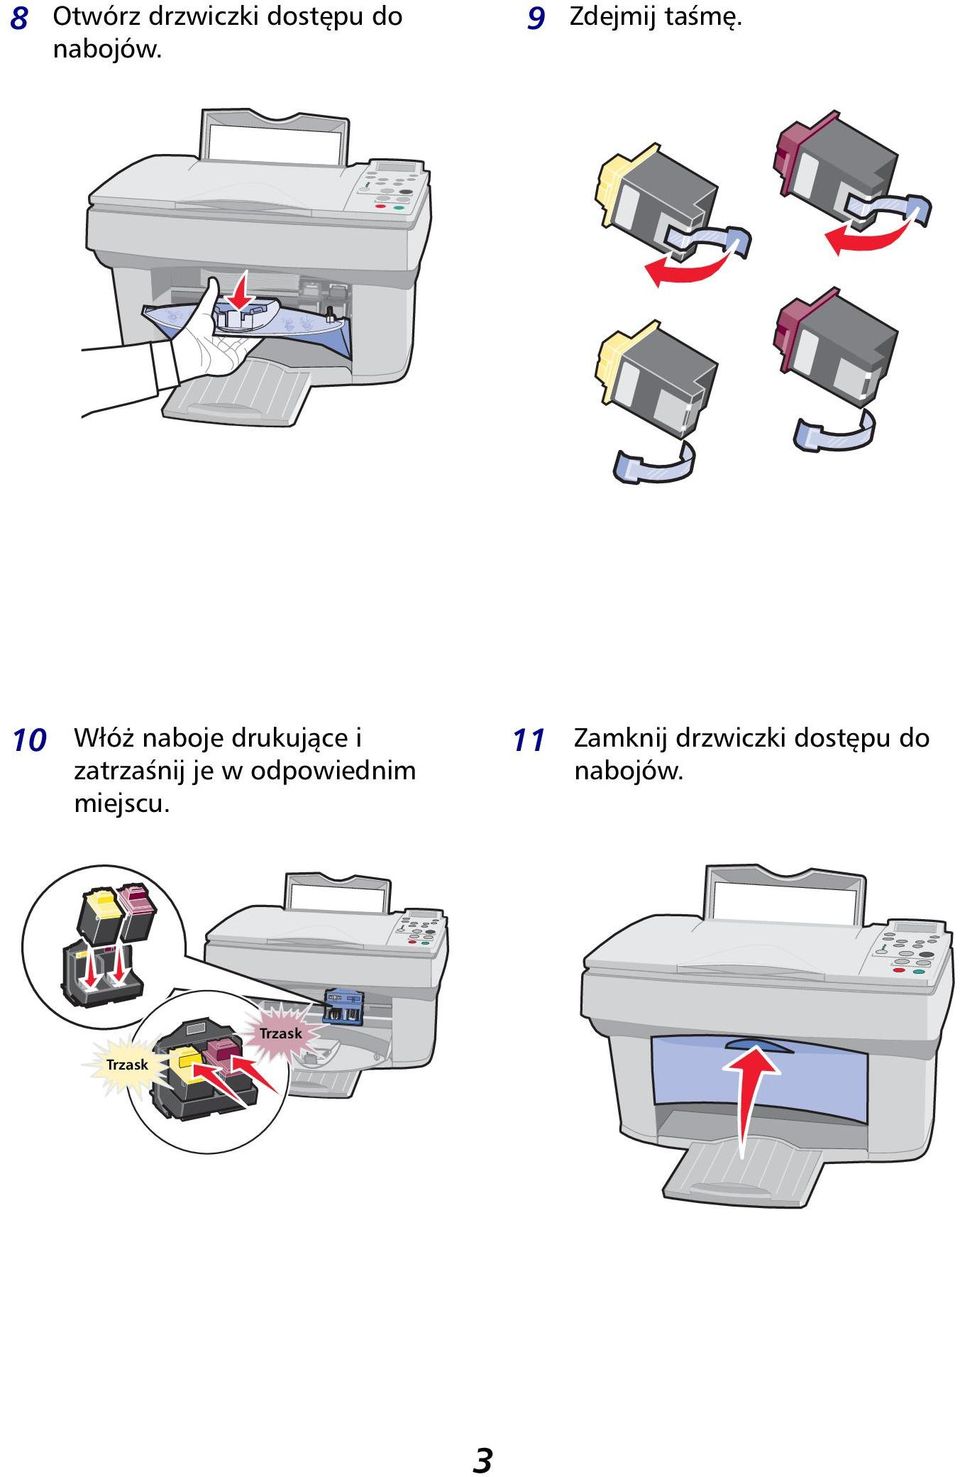 10 Włóż naboje drukujące i zatrzaśnij je w